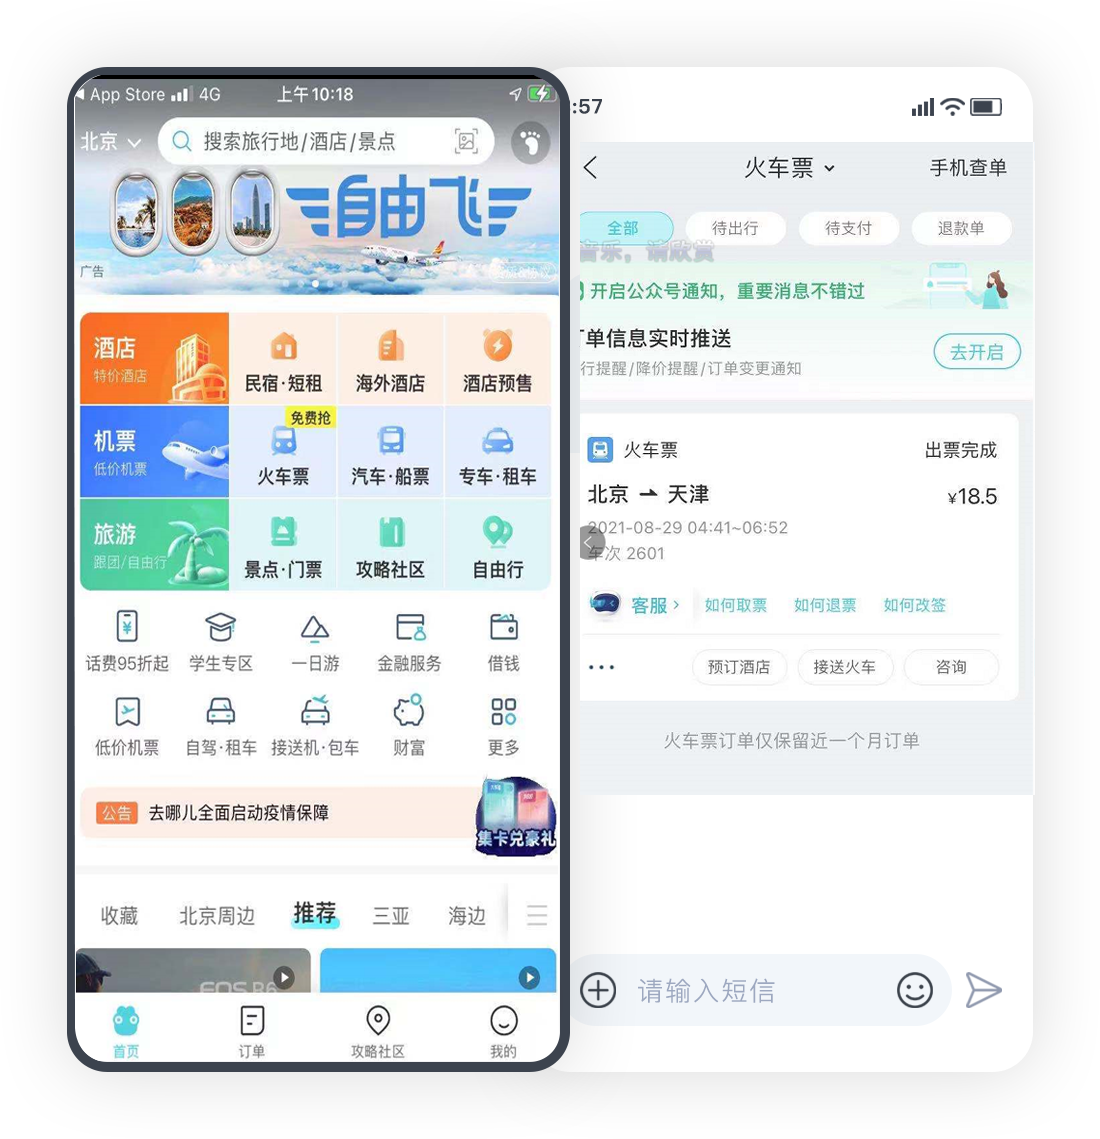 bwin·必赢(中国)唯一官方网站_产品7028